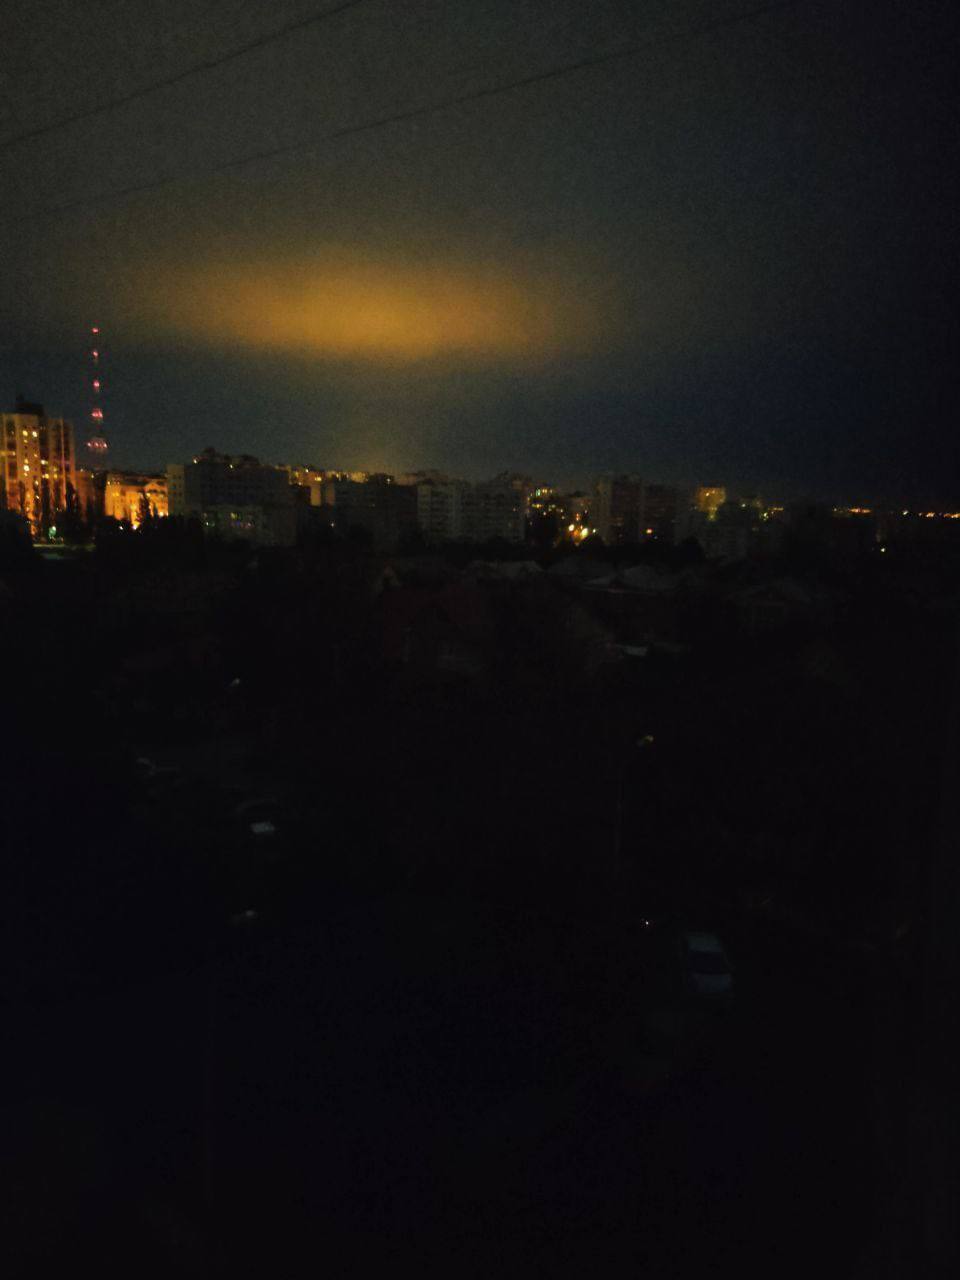 Харьков без света и воды